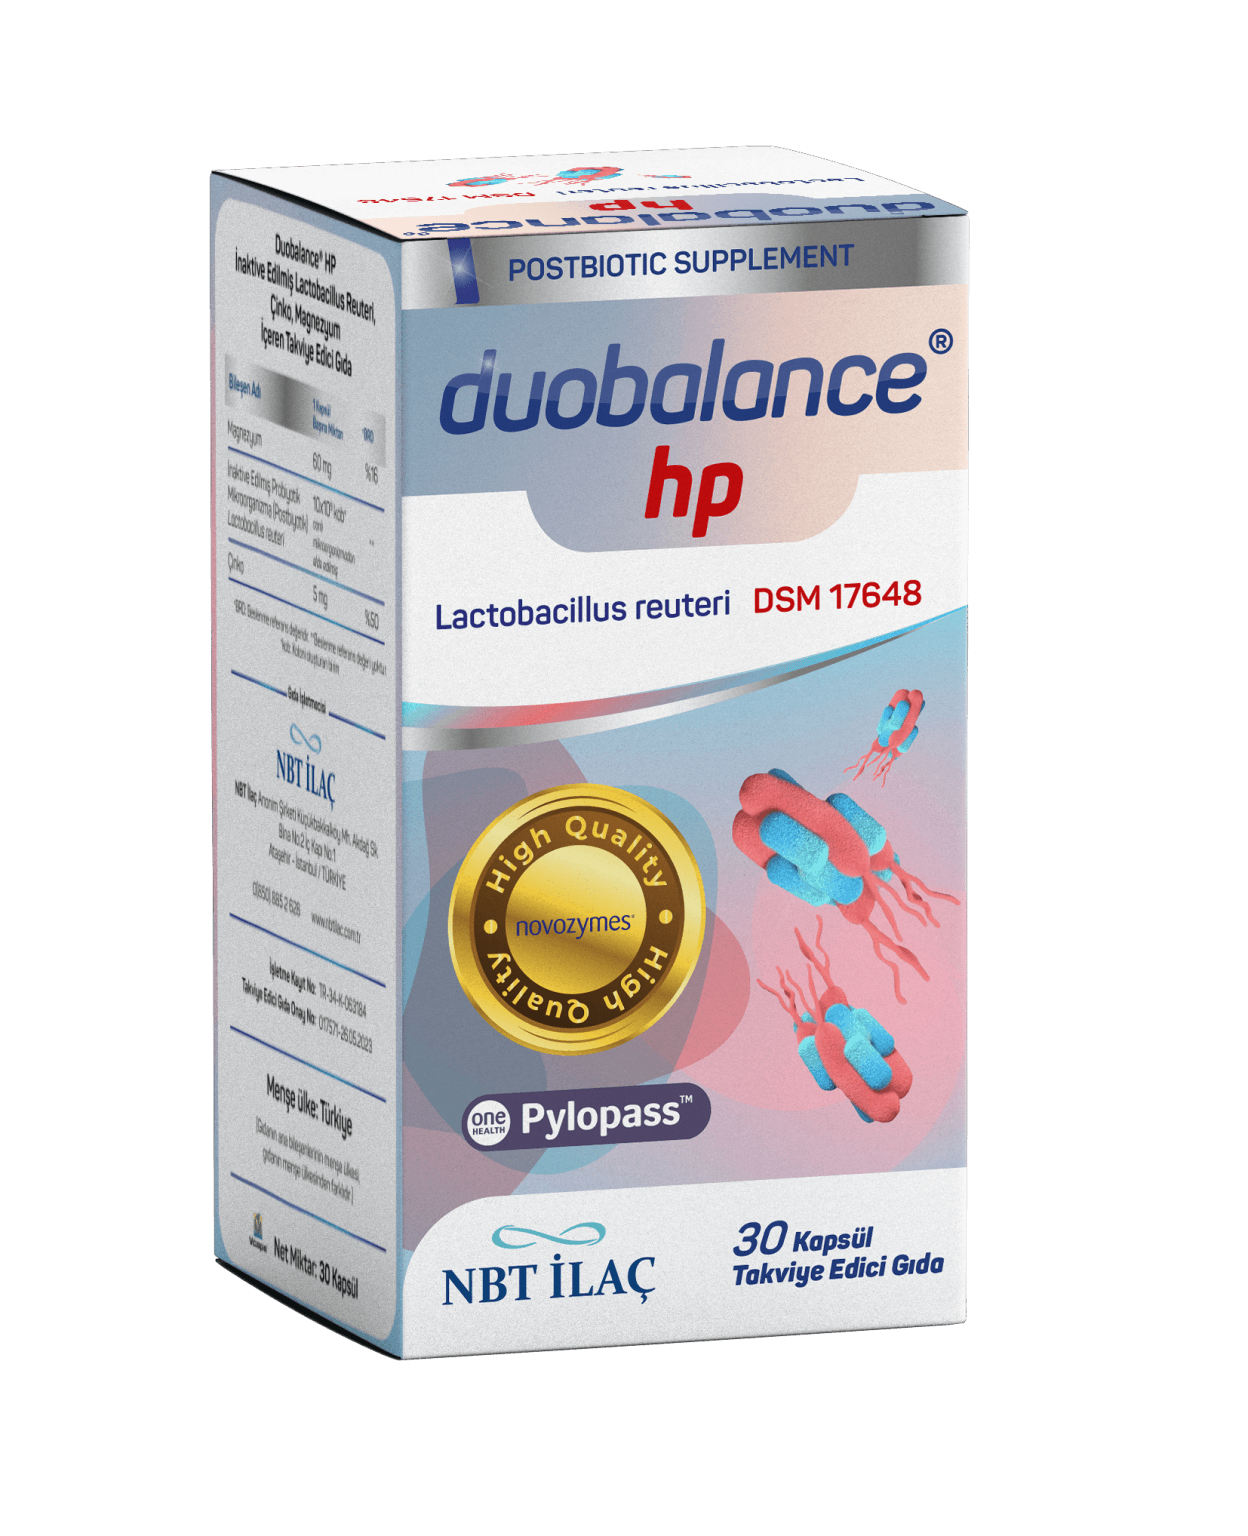 NBT Life Duobalance Hp Takviye Edici Gıda 30 Kapsül